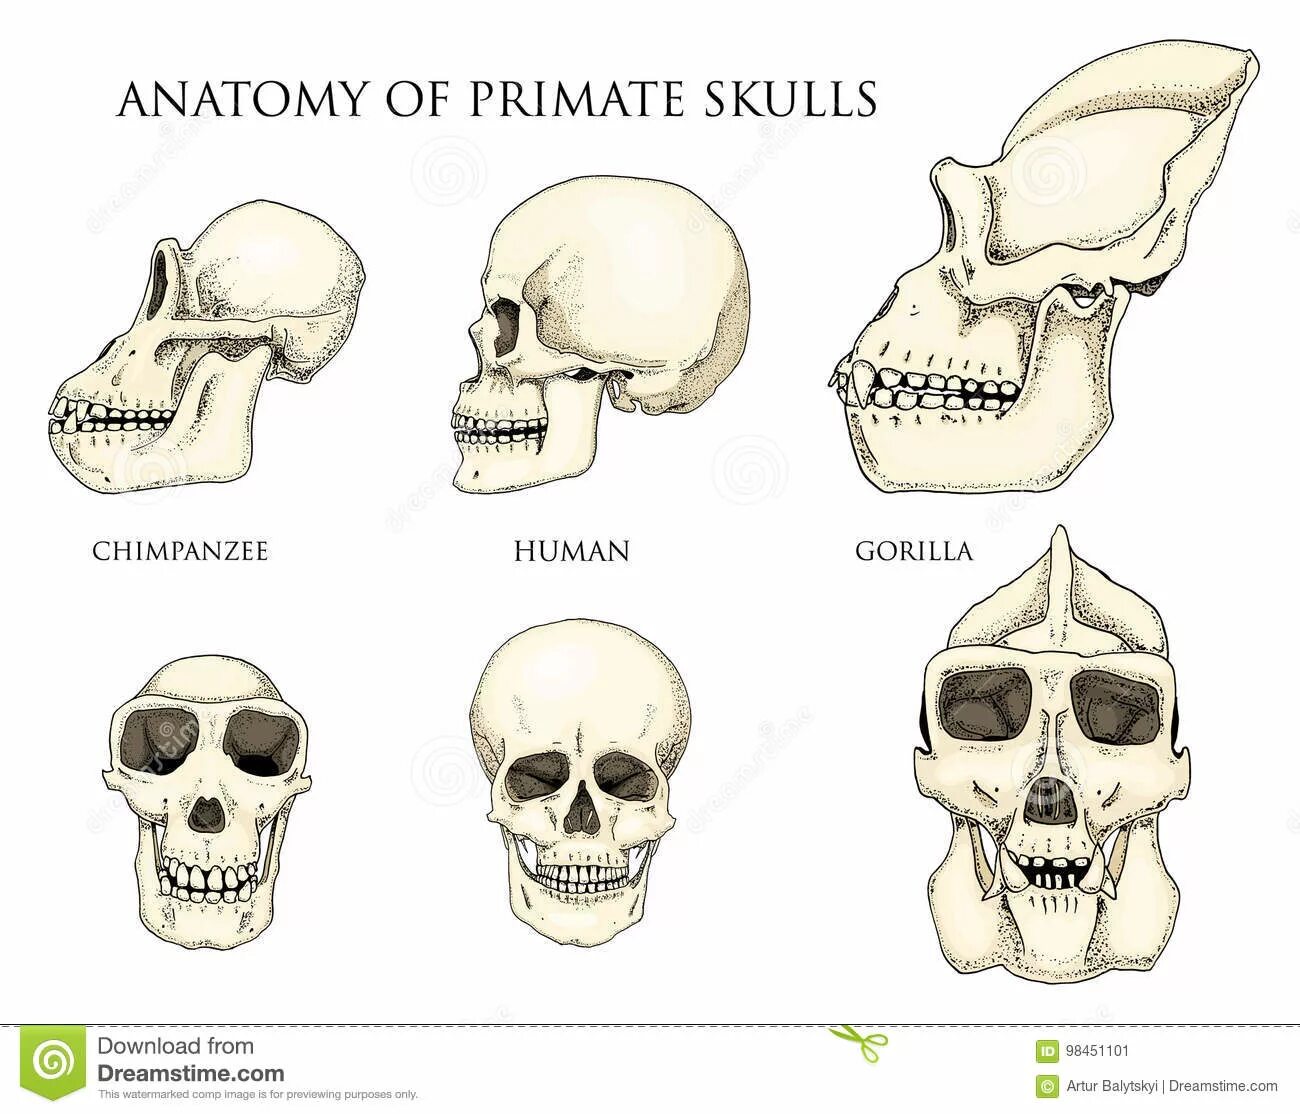 Мозг гориллы и человека. Строение черепа человека и человекообразной обезьяны. Череп человека и череп обезьяны. Сравнение черепа человека и обезьяны.